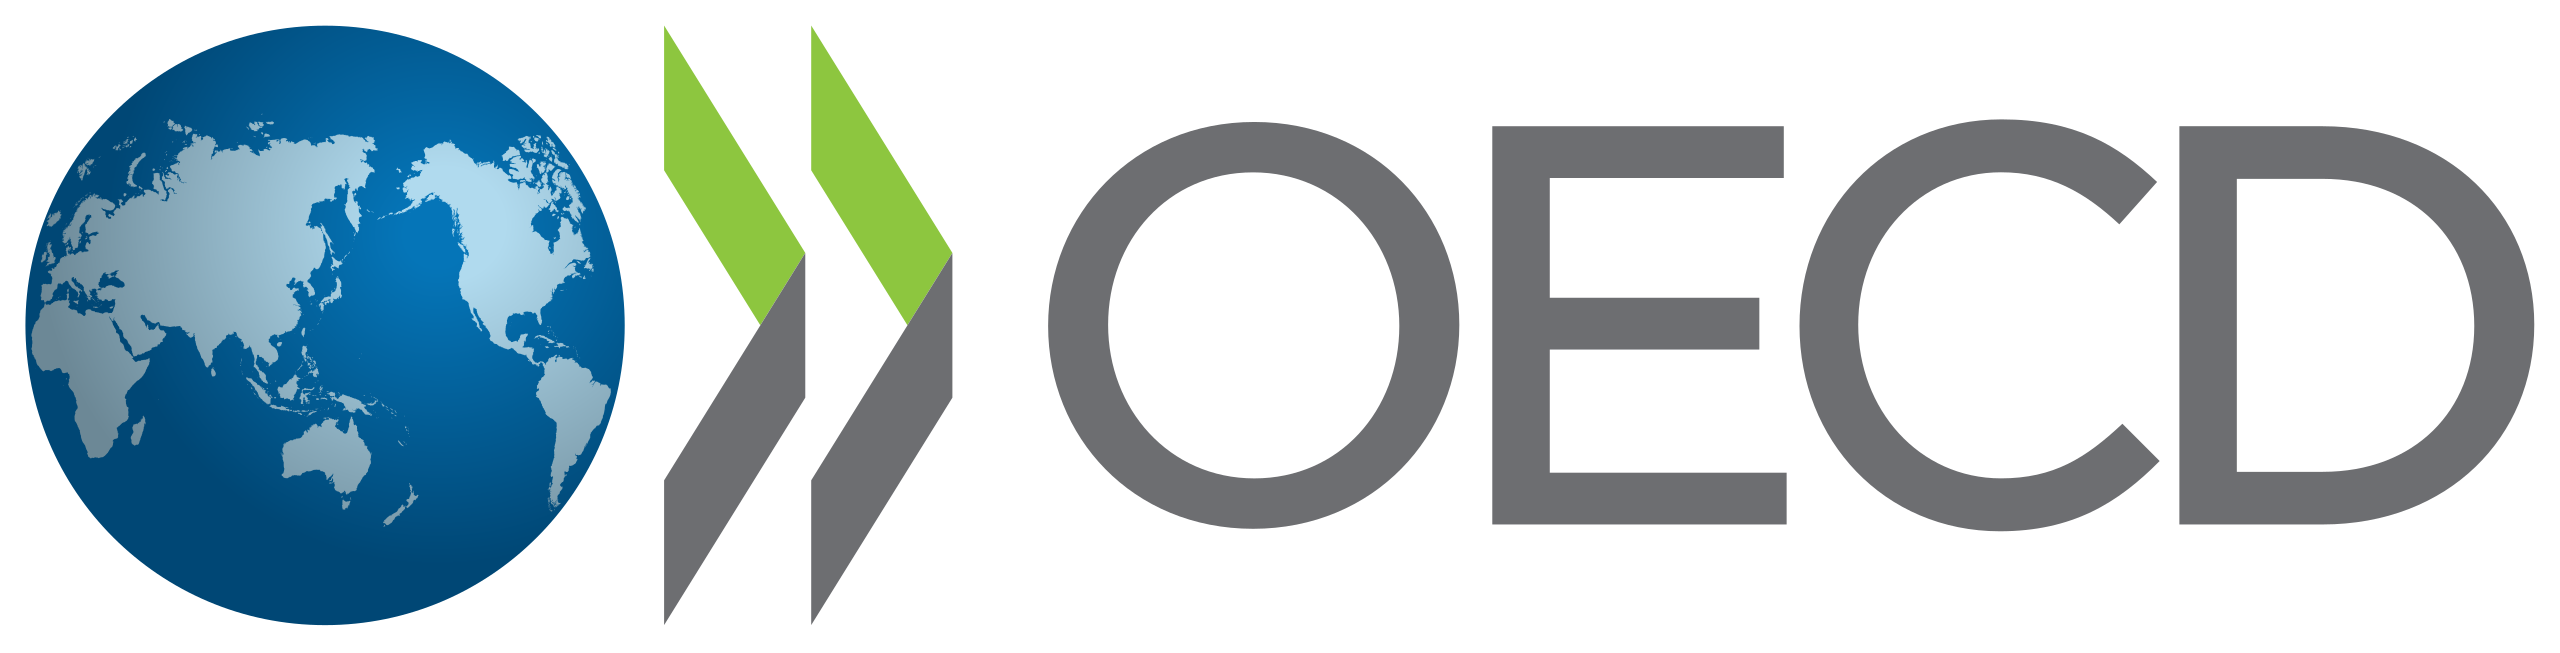 L’Organisation de coopération et de développement économiques (OCDE)